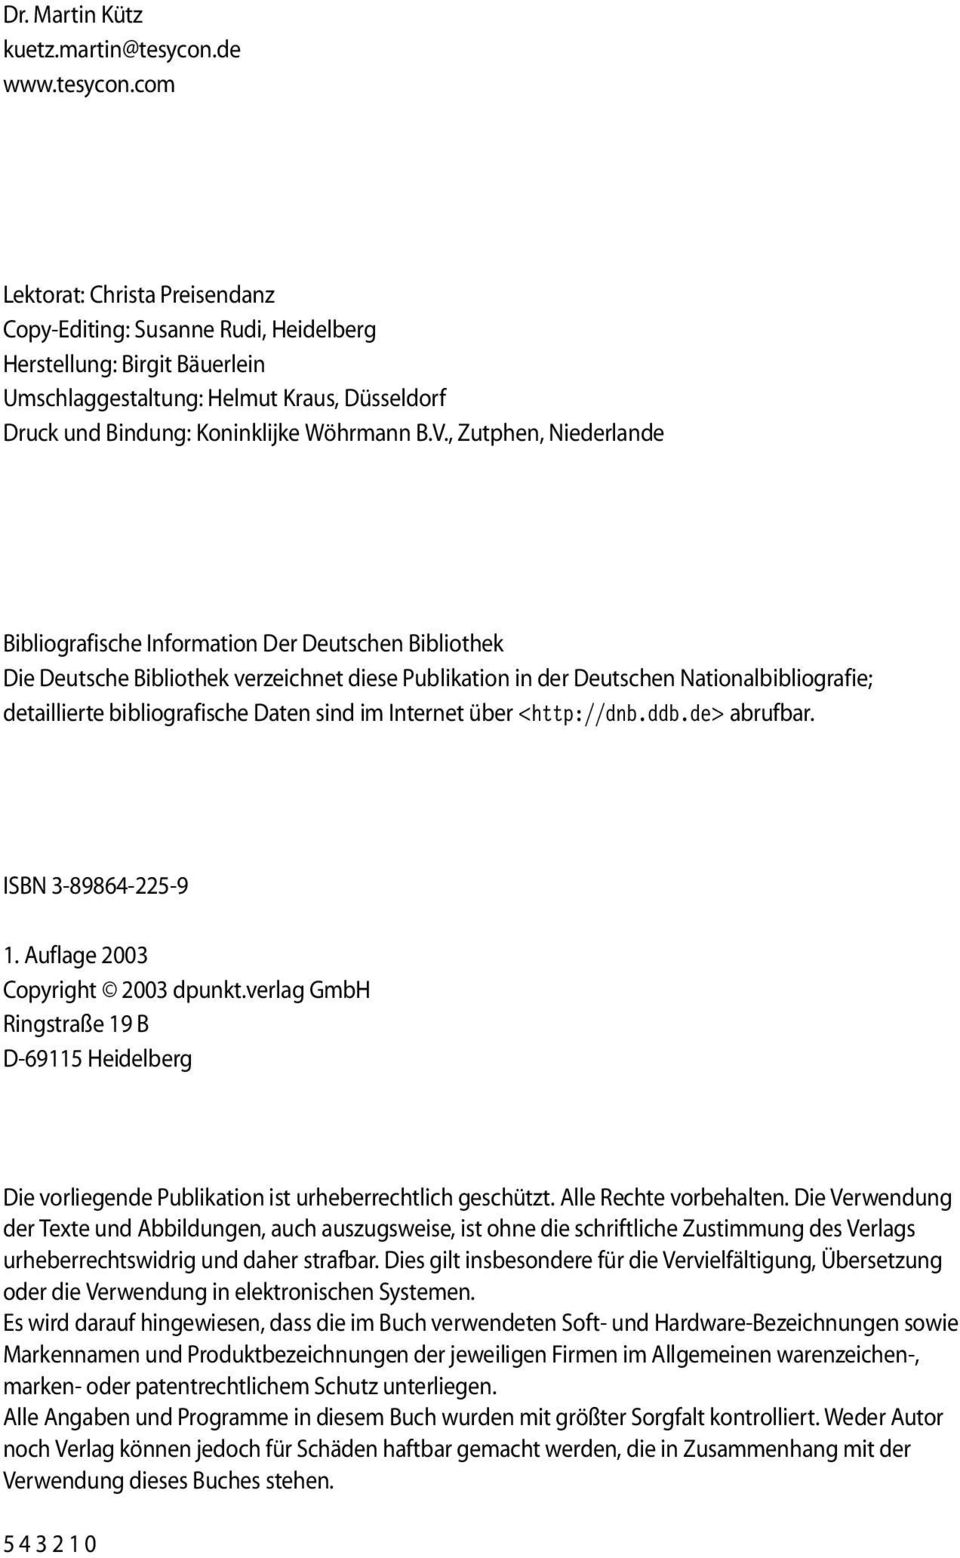 com Lektorat: Christa Preisendanz Copy-Editing: Susanne Rudi, Heidelberg Herstellung: Birgit Bäuerlein Umschlaggestaltung: Helmut Kraus, Düsseldorf Druck und Bindung: Koninklijke Wöhrmann B.V.